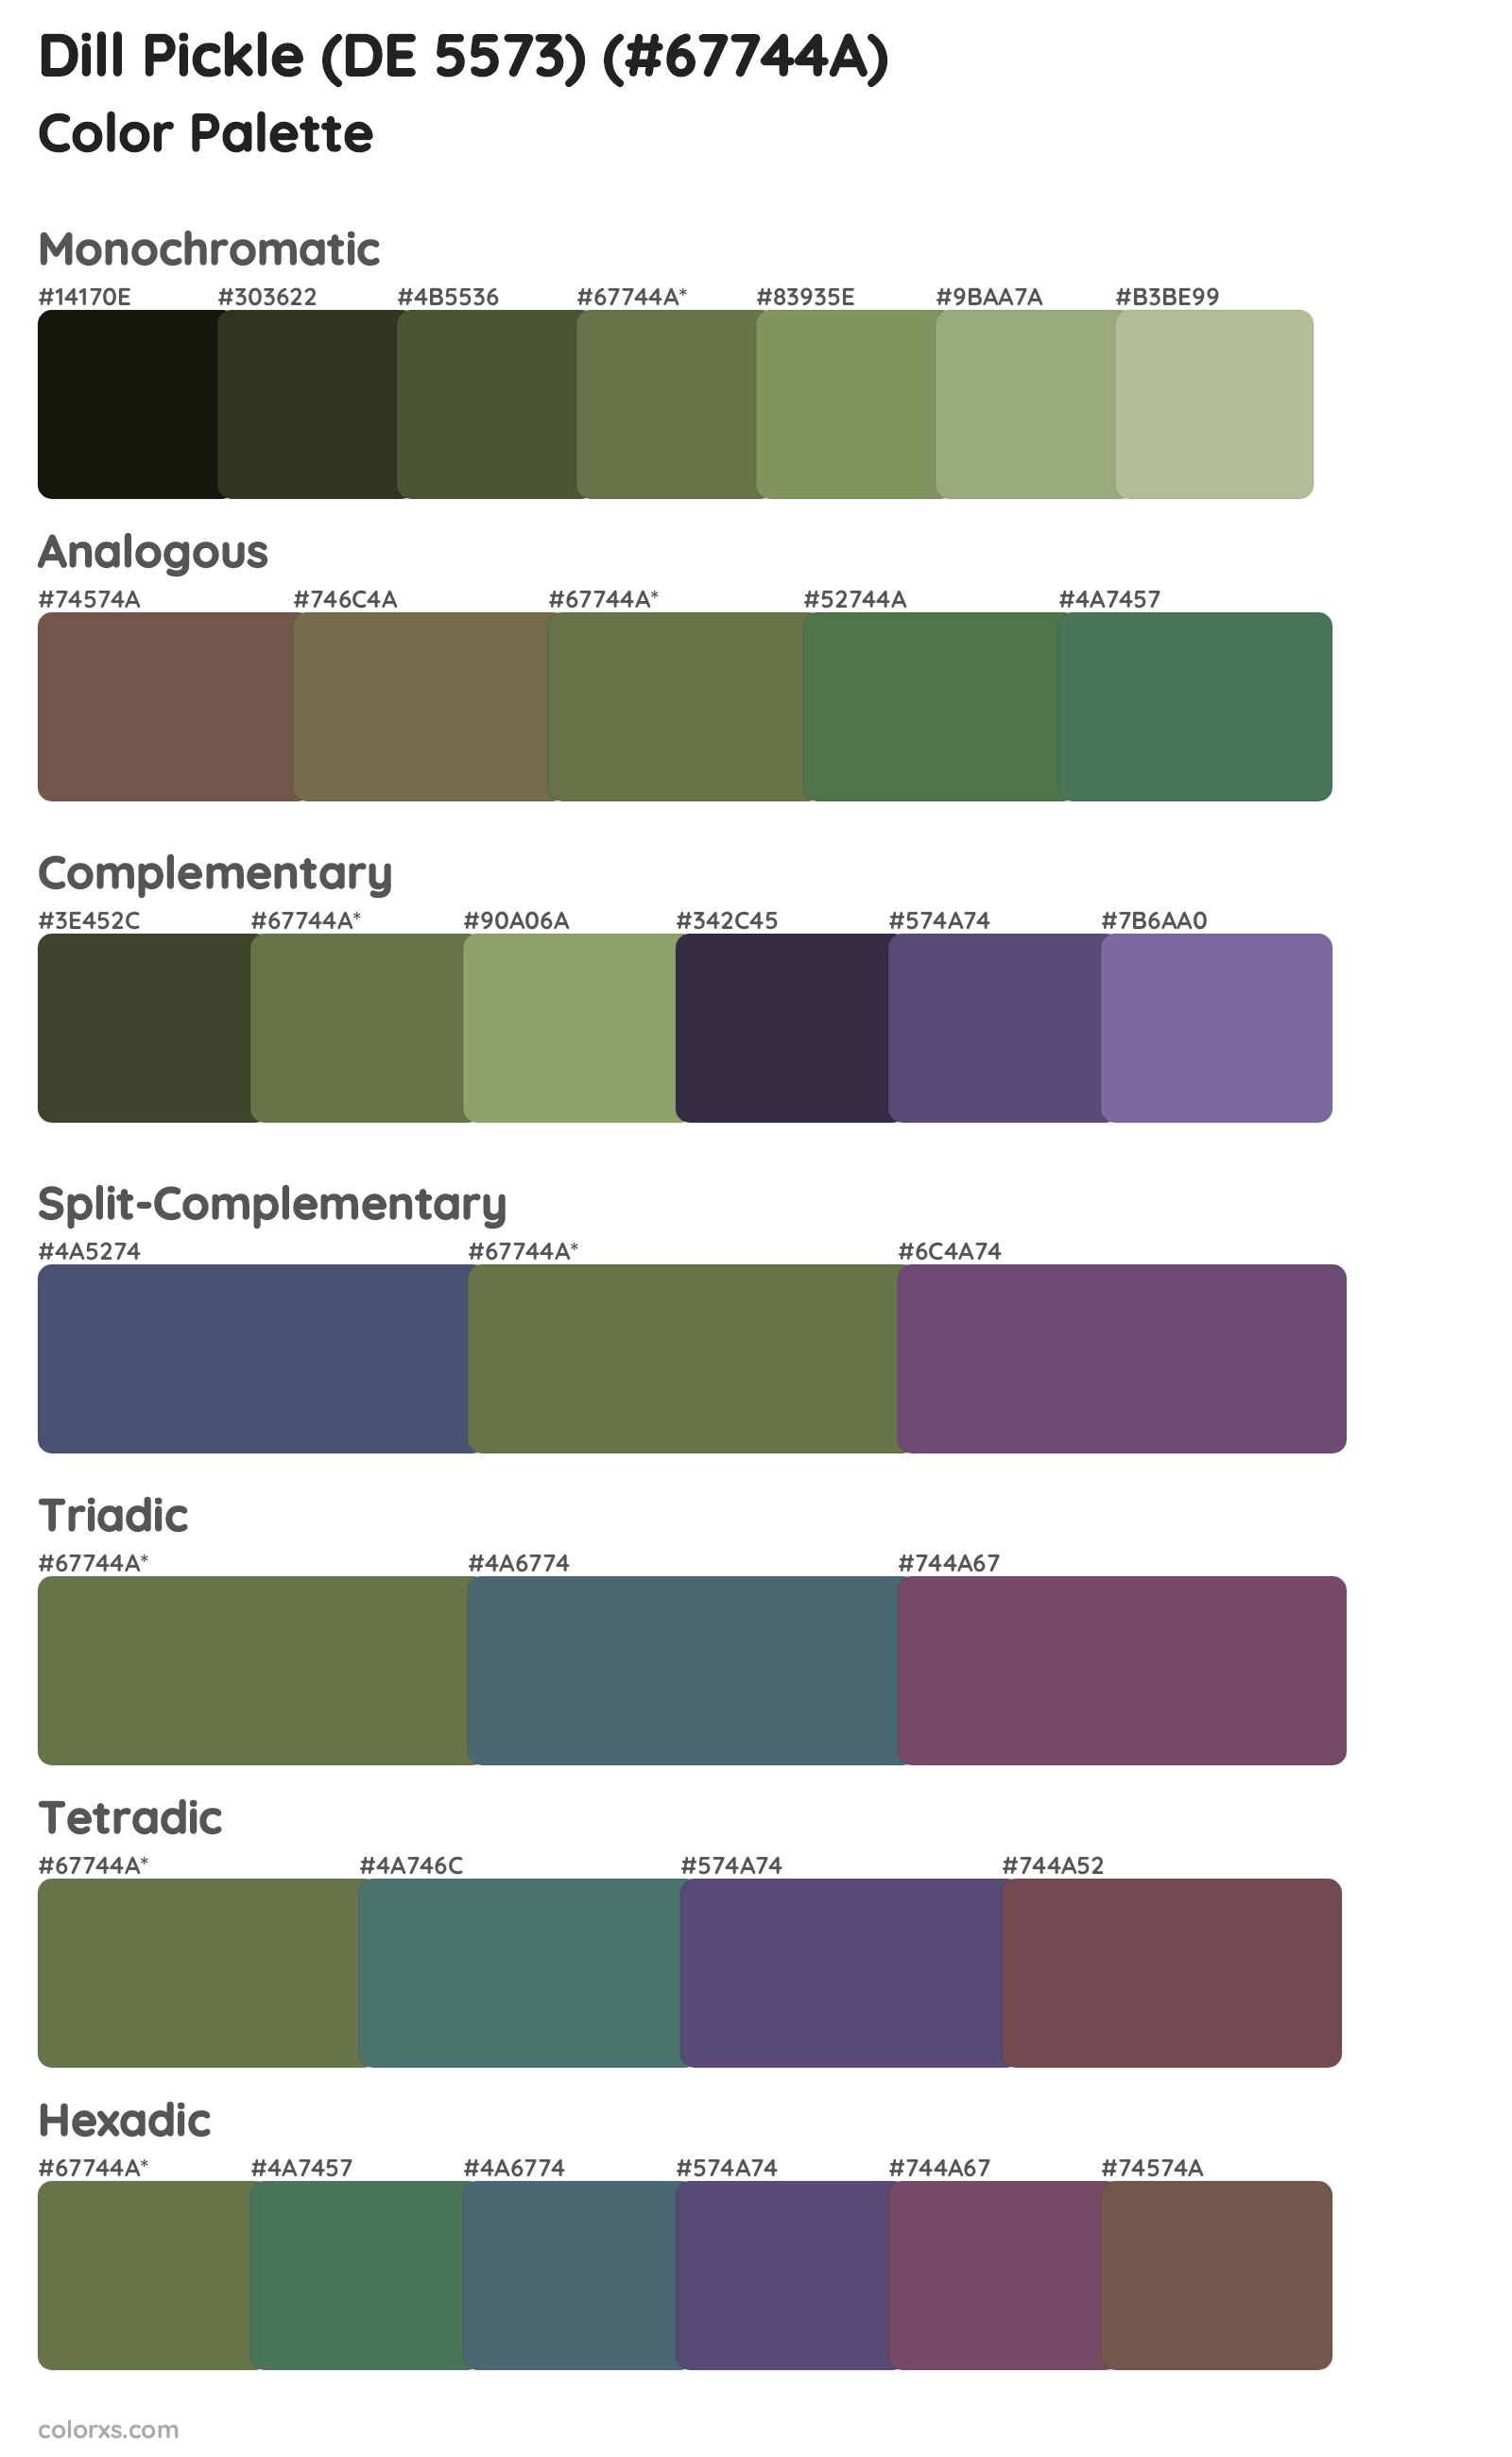 Dill Pickle (DE 5573) Color Scheme Palettes